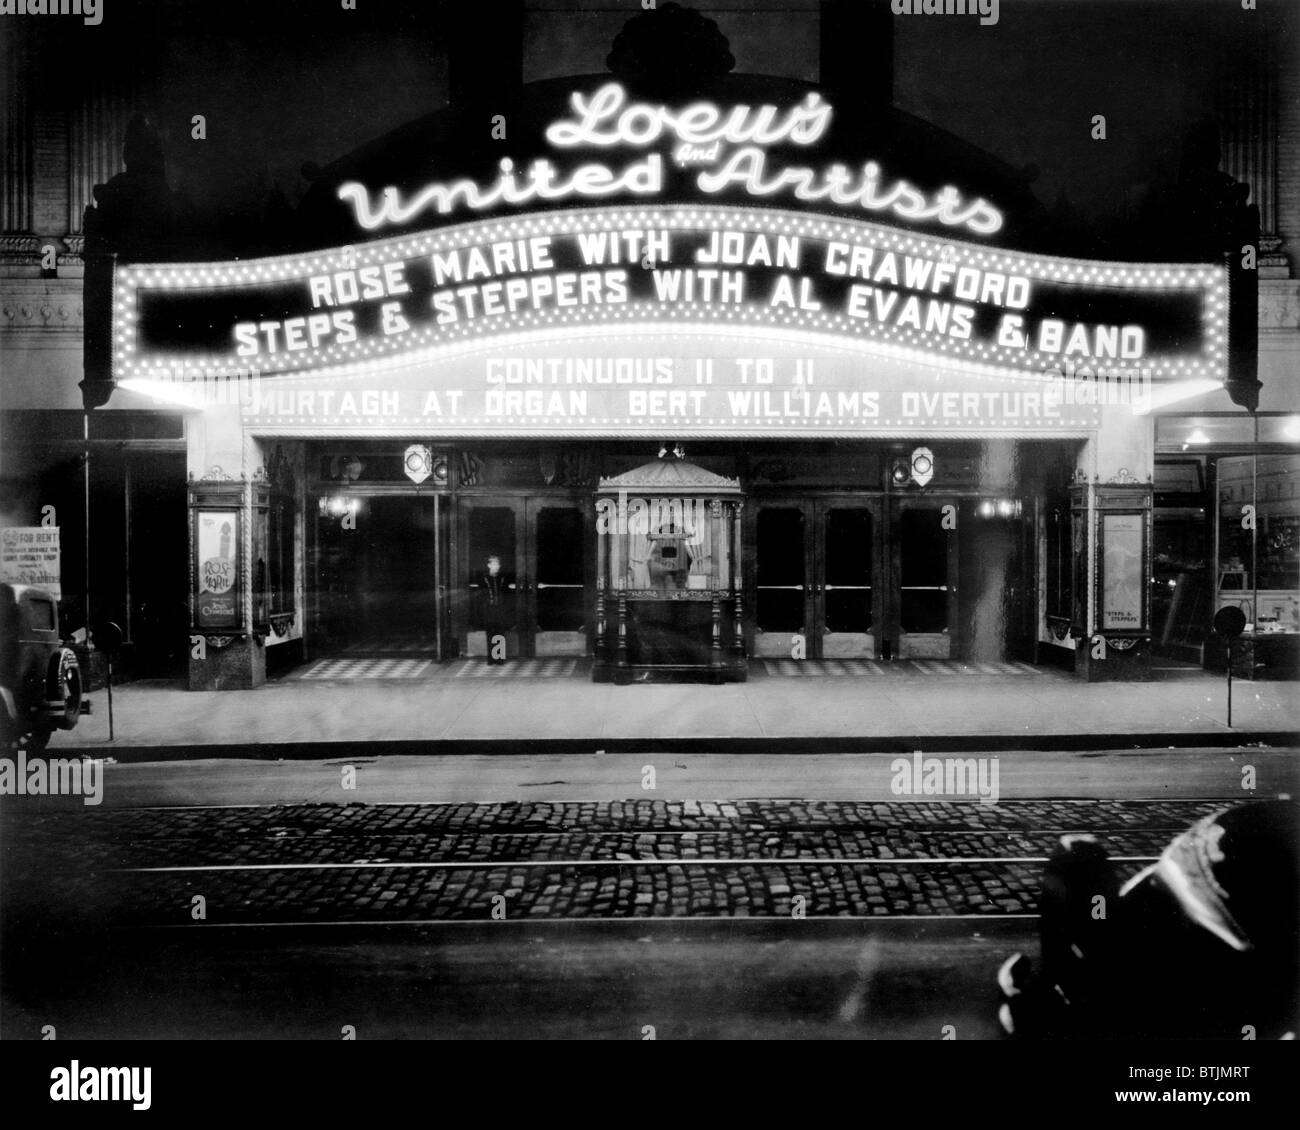 Loew's e gli artisti uniti Ohio Theatre, esterno illustrante ROSE-MARIE, con Joan Crawford e passaggi 7 stepper, con Al Evans & Band, continuo 11 a 11, Murtagh all organo, Bert Williams Overture, 39 East State Street, Columbus, contea di Franklin, Ohio, 1928. Foto Stock